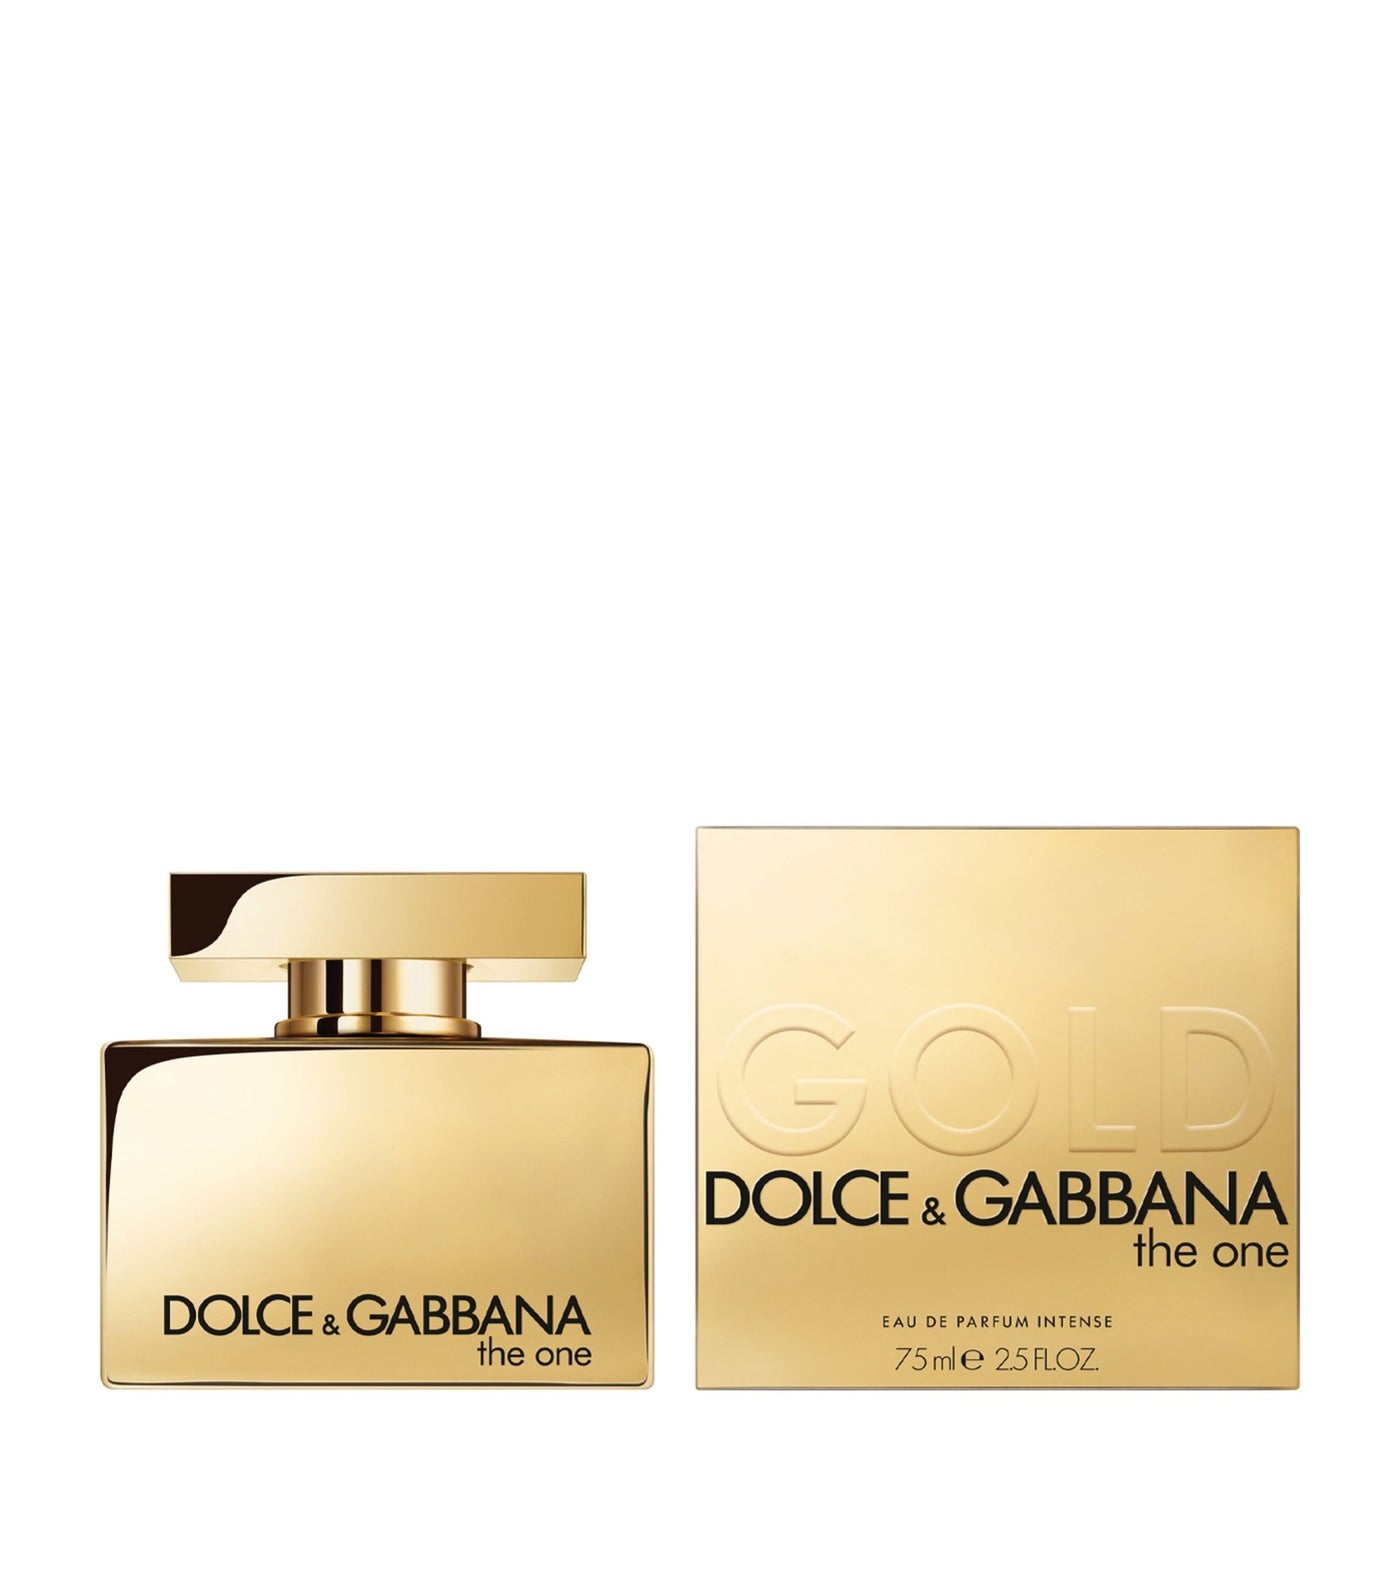 Dolce & Gabbana The One Gold For Women Eau De Parfum Intense 75Ml Tester